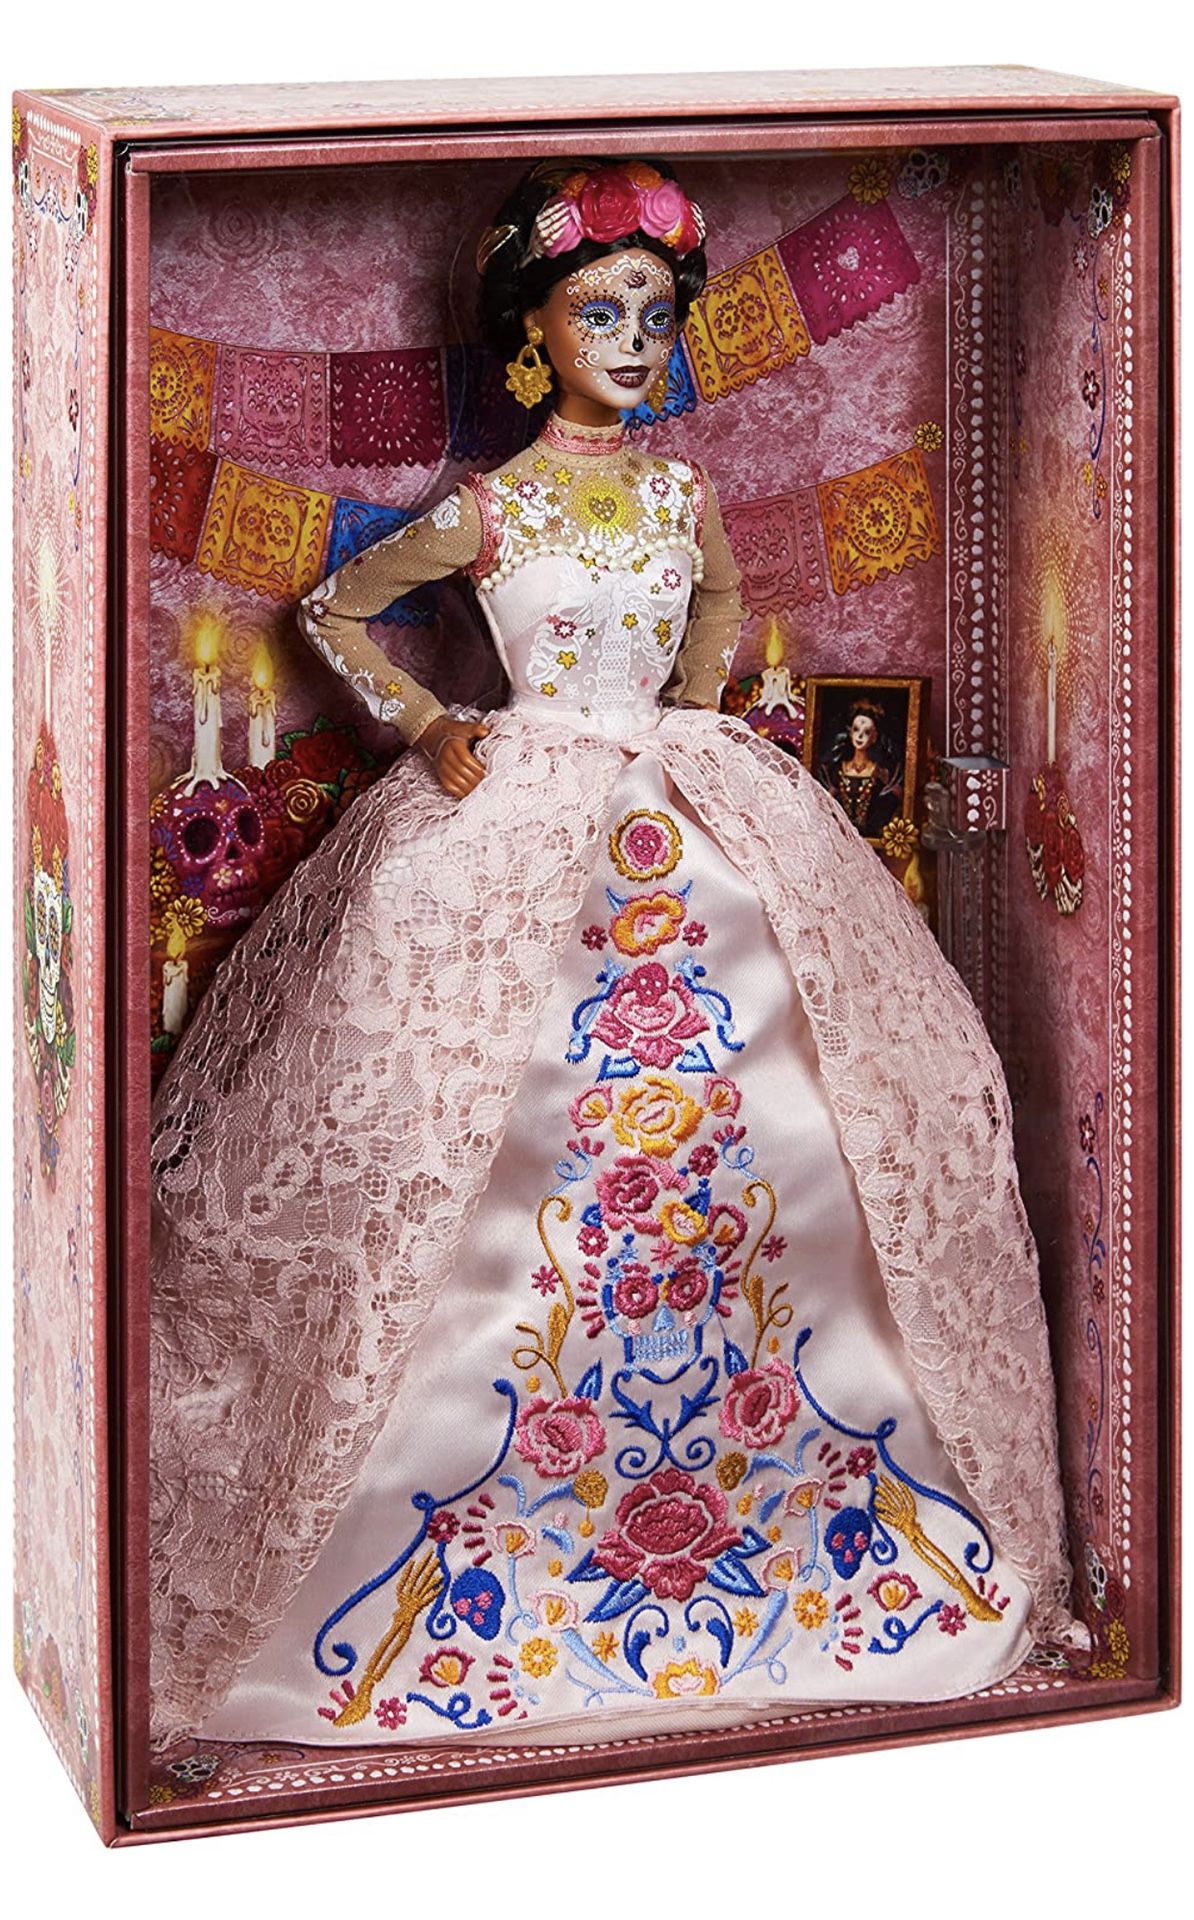 Barbie Signature Dia De Muertos 2020 Doll